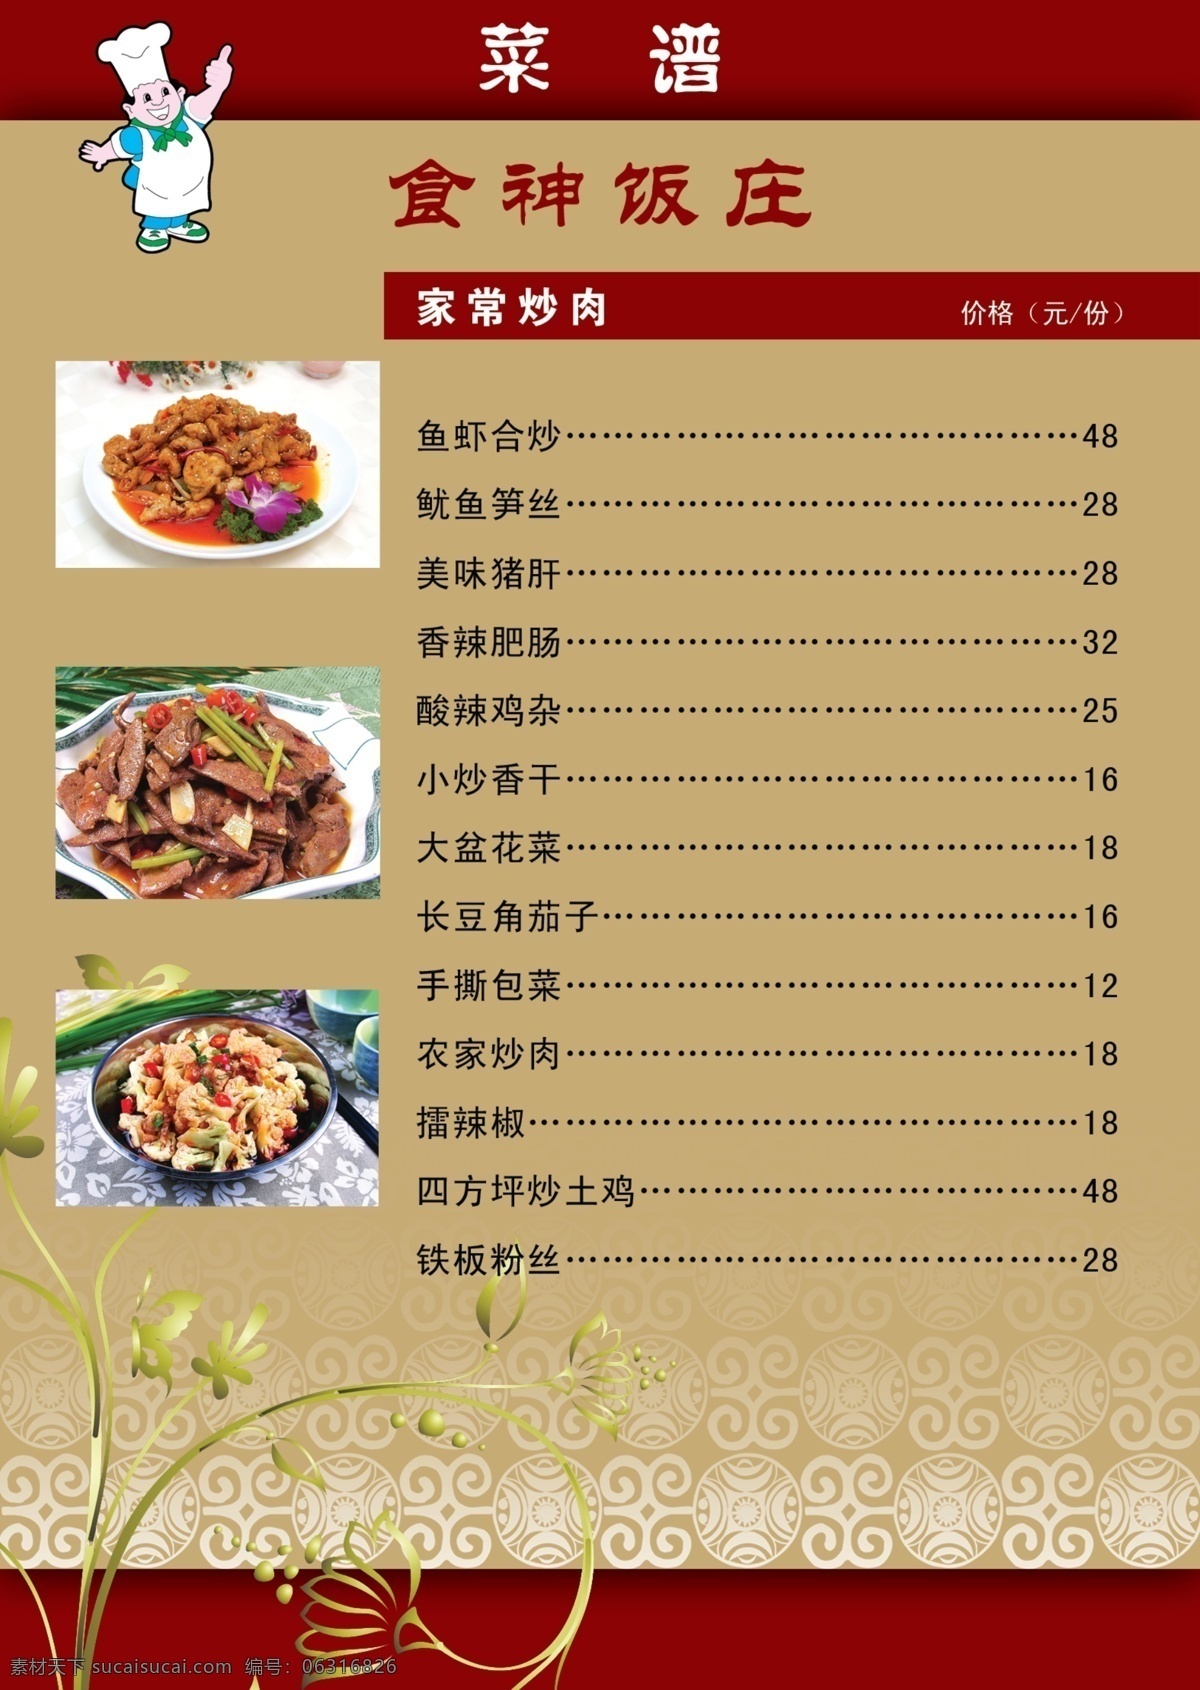 菜谱 菜单 广告设计模板 其他模版 源文件 饭庄 食神 画册 封面